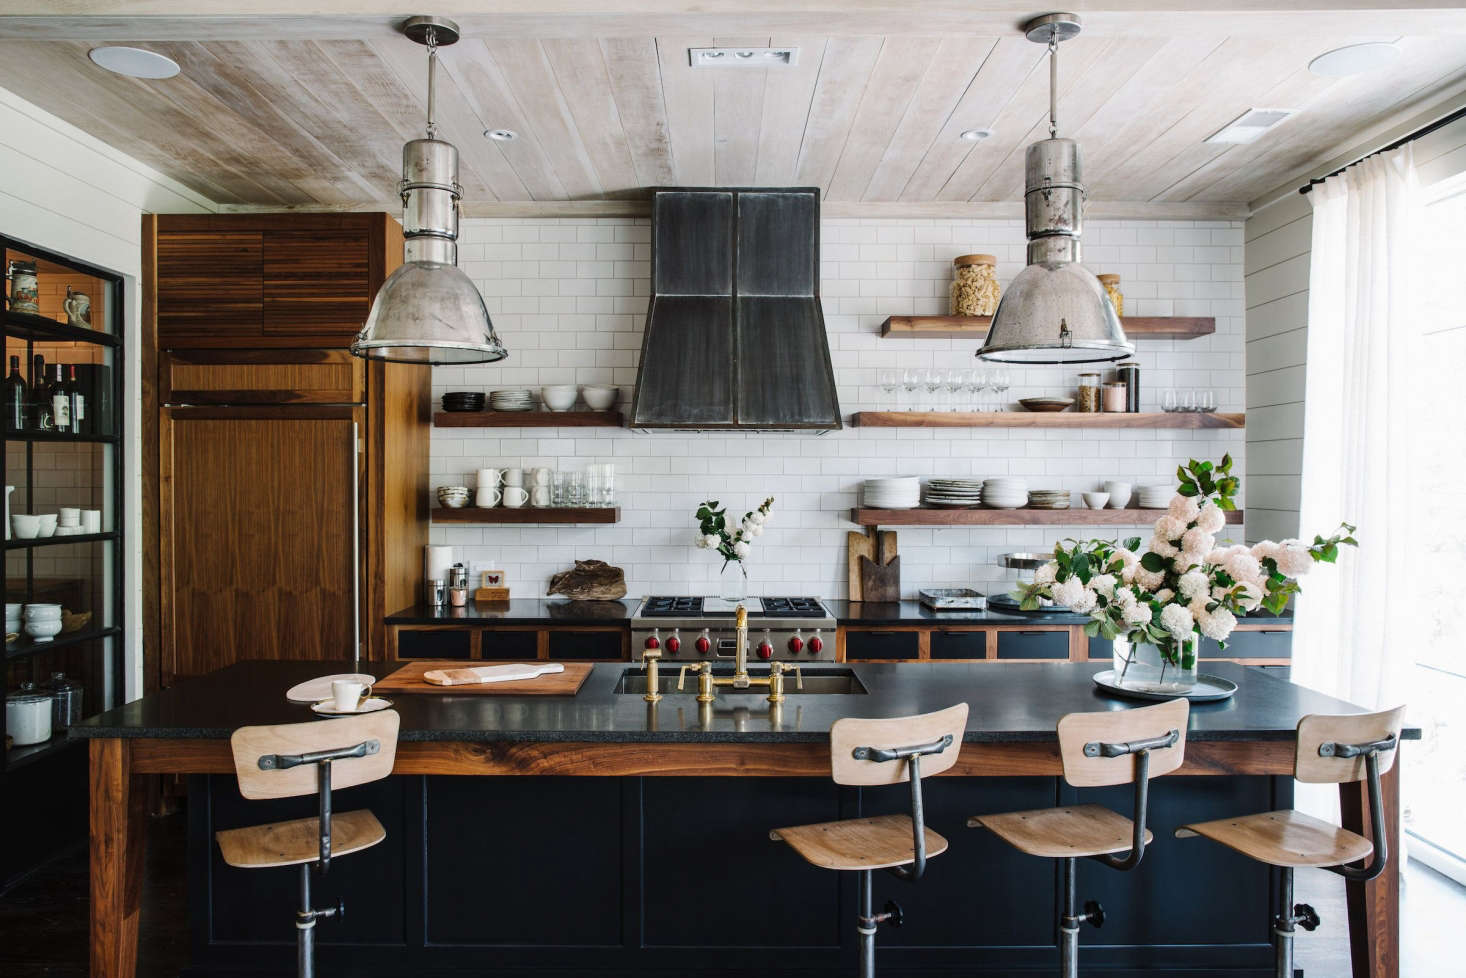 10 Creative Kitchen Cabinet Styles